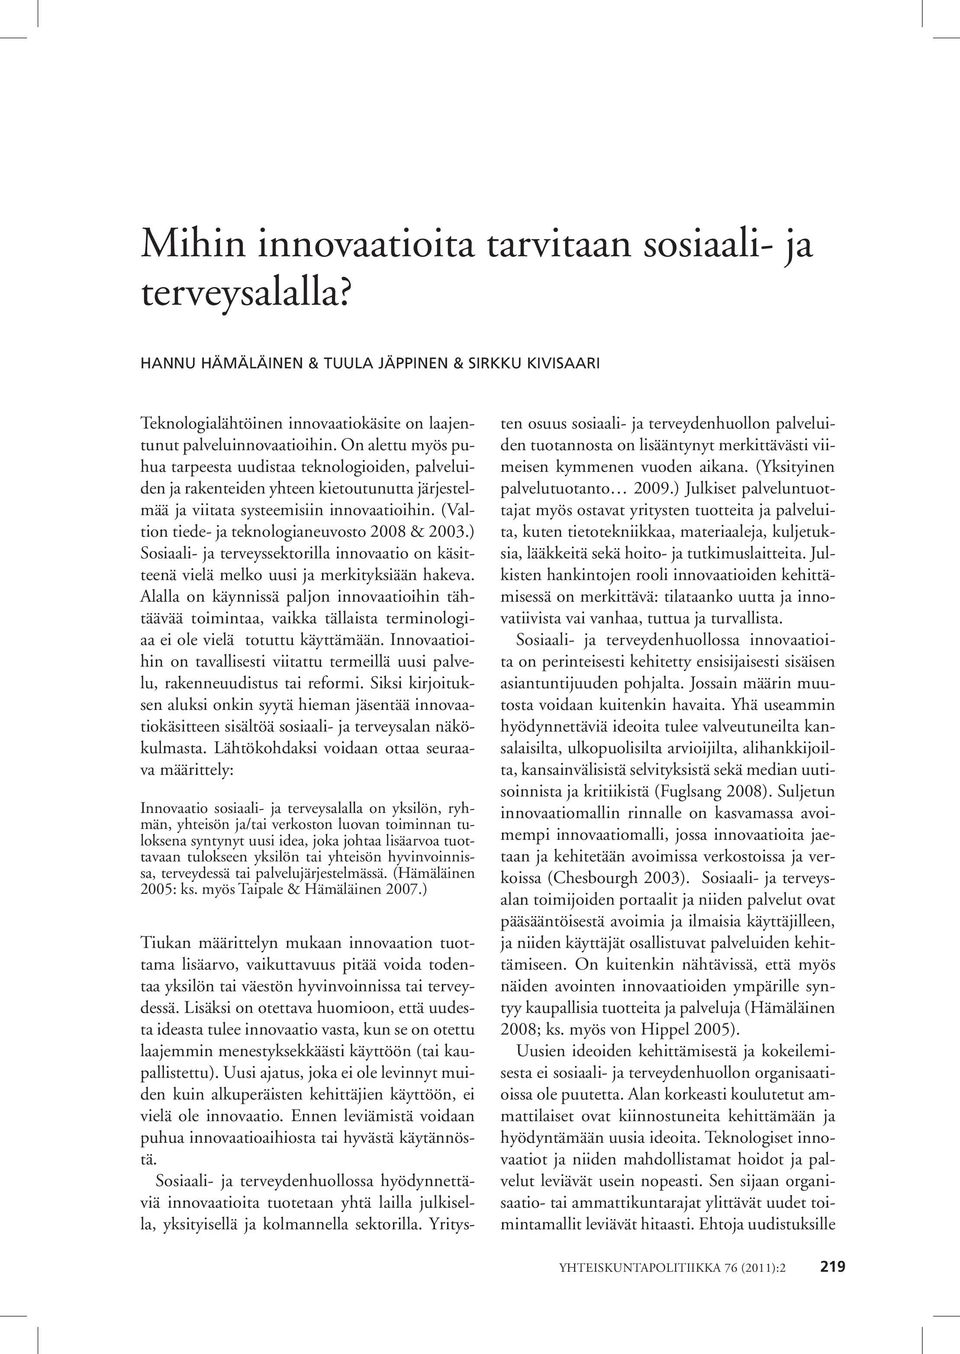 (Valtion tiede- ja teknologianeuvosto 2008 & 2003.) Sosiaali- ja terveyssektorilla innovaatio on käsitteenä vielä melko uusi ja merkityksiään hakeva.